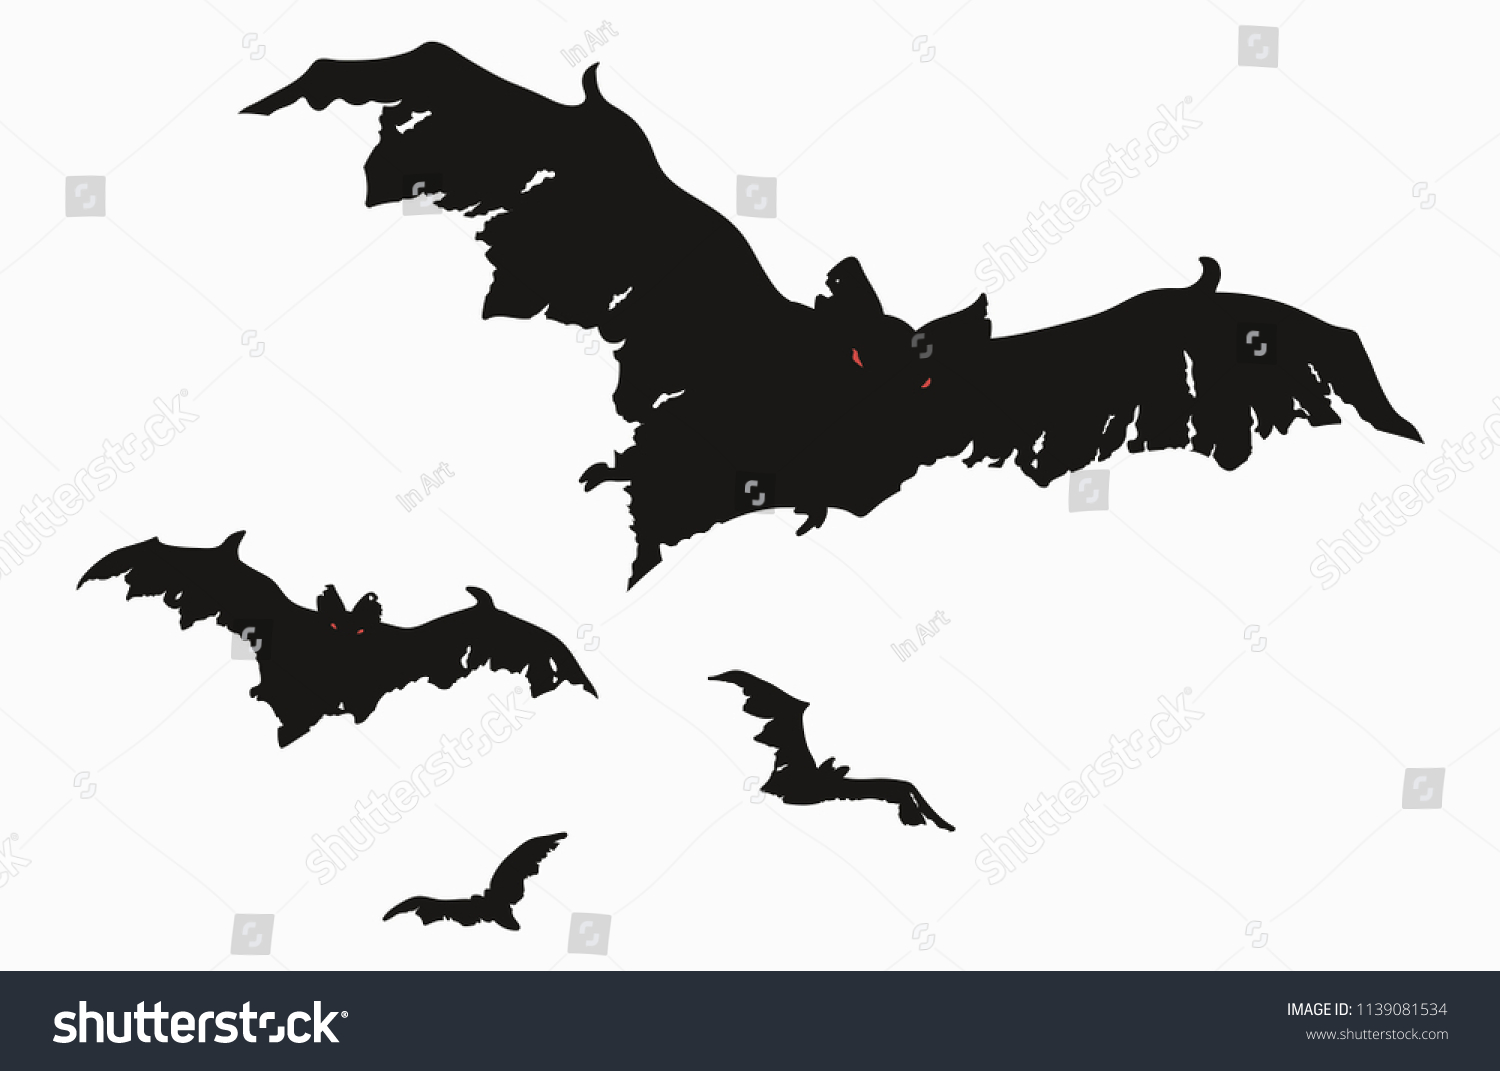 コウモリの群れ 羽が切れたコウモリの黒いシルエットのセット バットゾンビのコレクション ハロウィーンの怪物のイラスト 夜の生き物の絵 空飛ぶ悪魔 タトゥー のベクター画像素材 ロイヤリティフリー